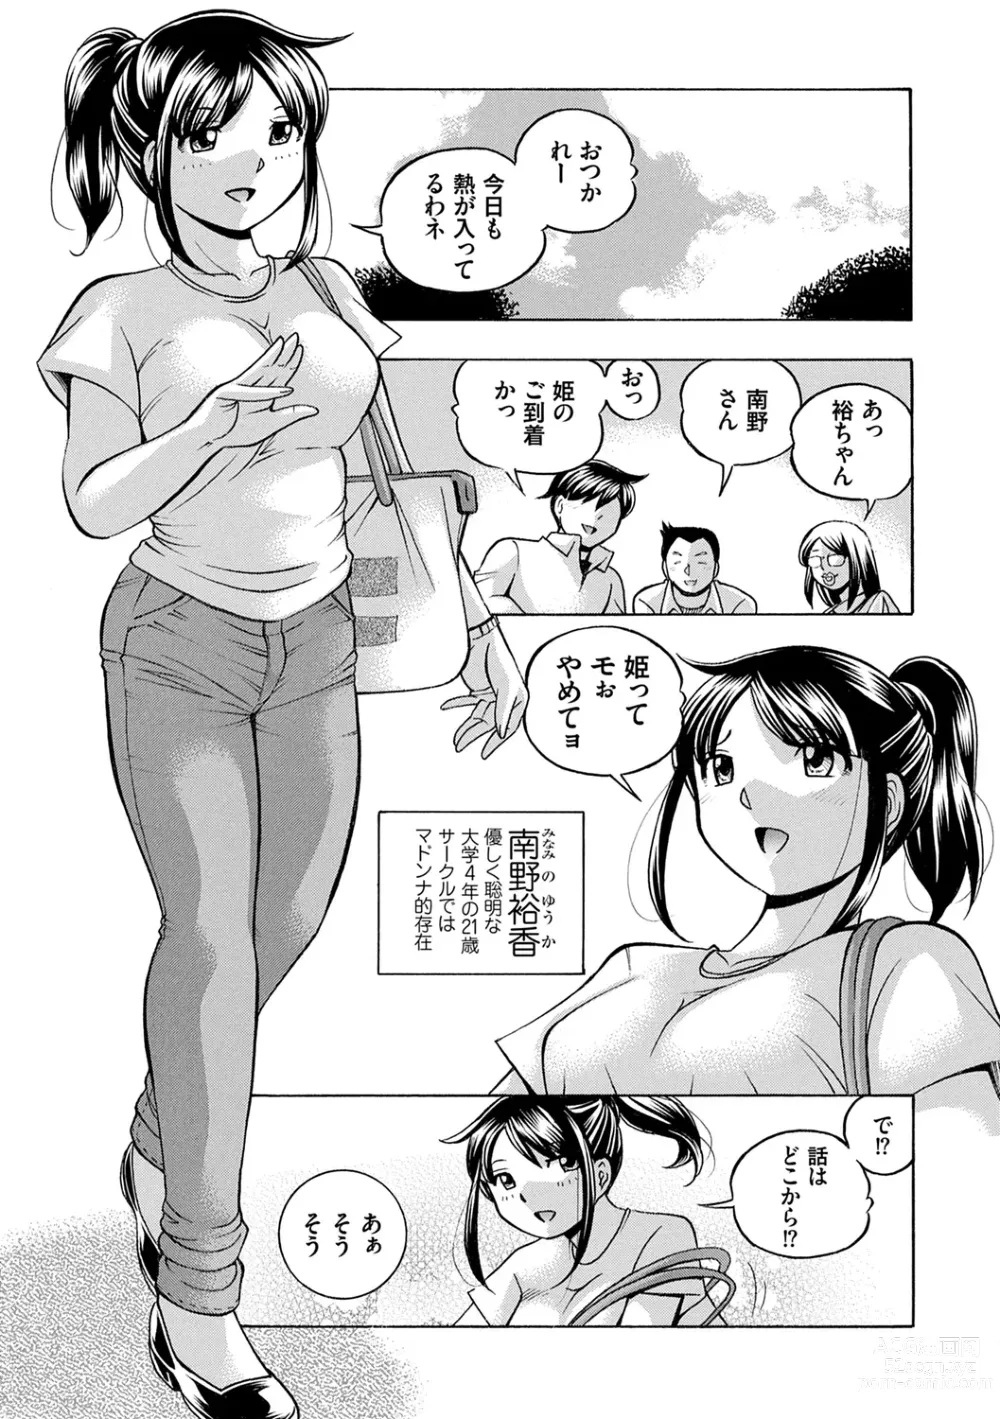 Page 9 of manga Joshidaisei Yuuka